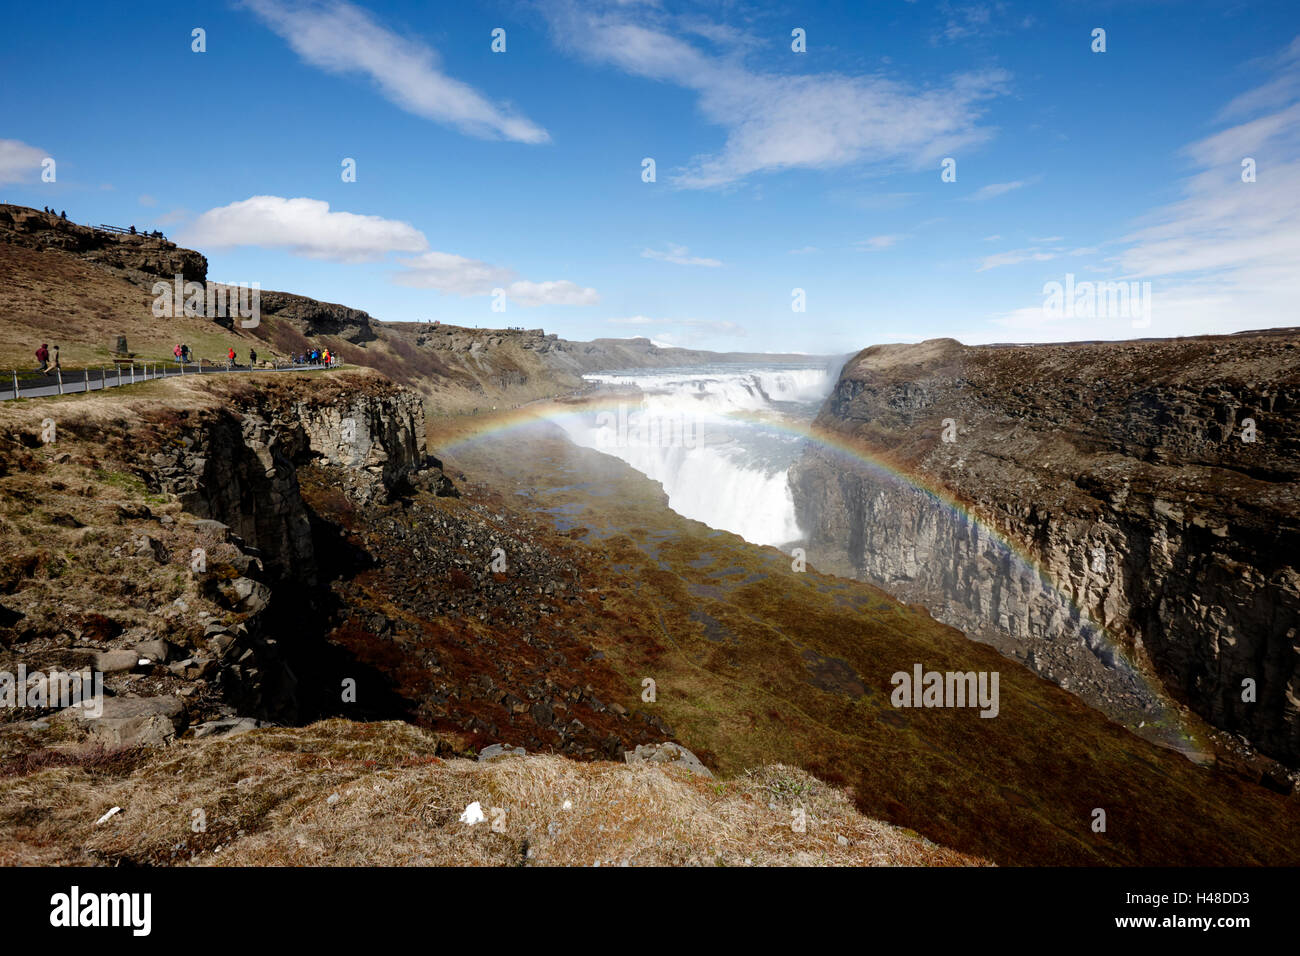 Cascade de gullfoss avec rainbow dans le cercle d'or l'Islande Banque D'Images